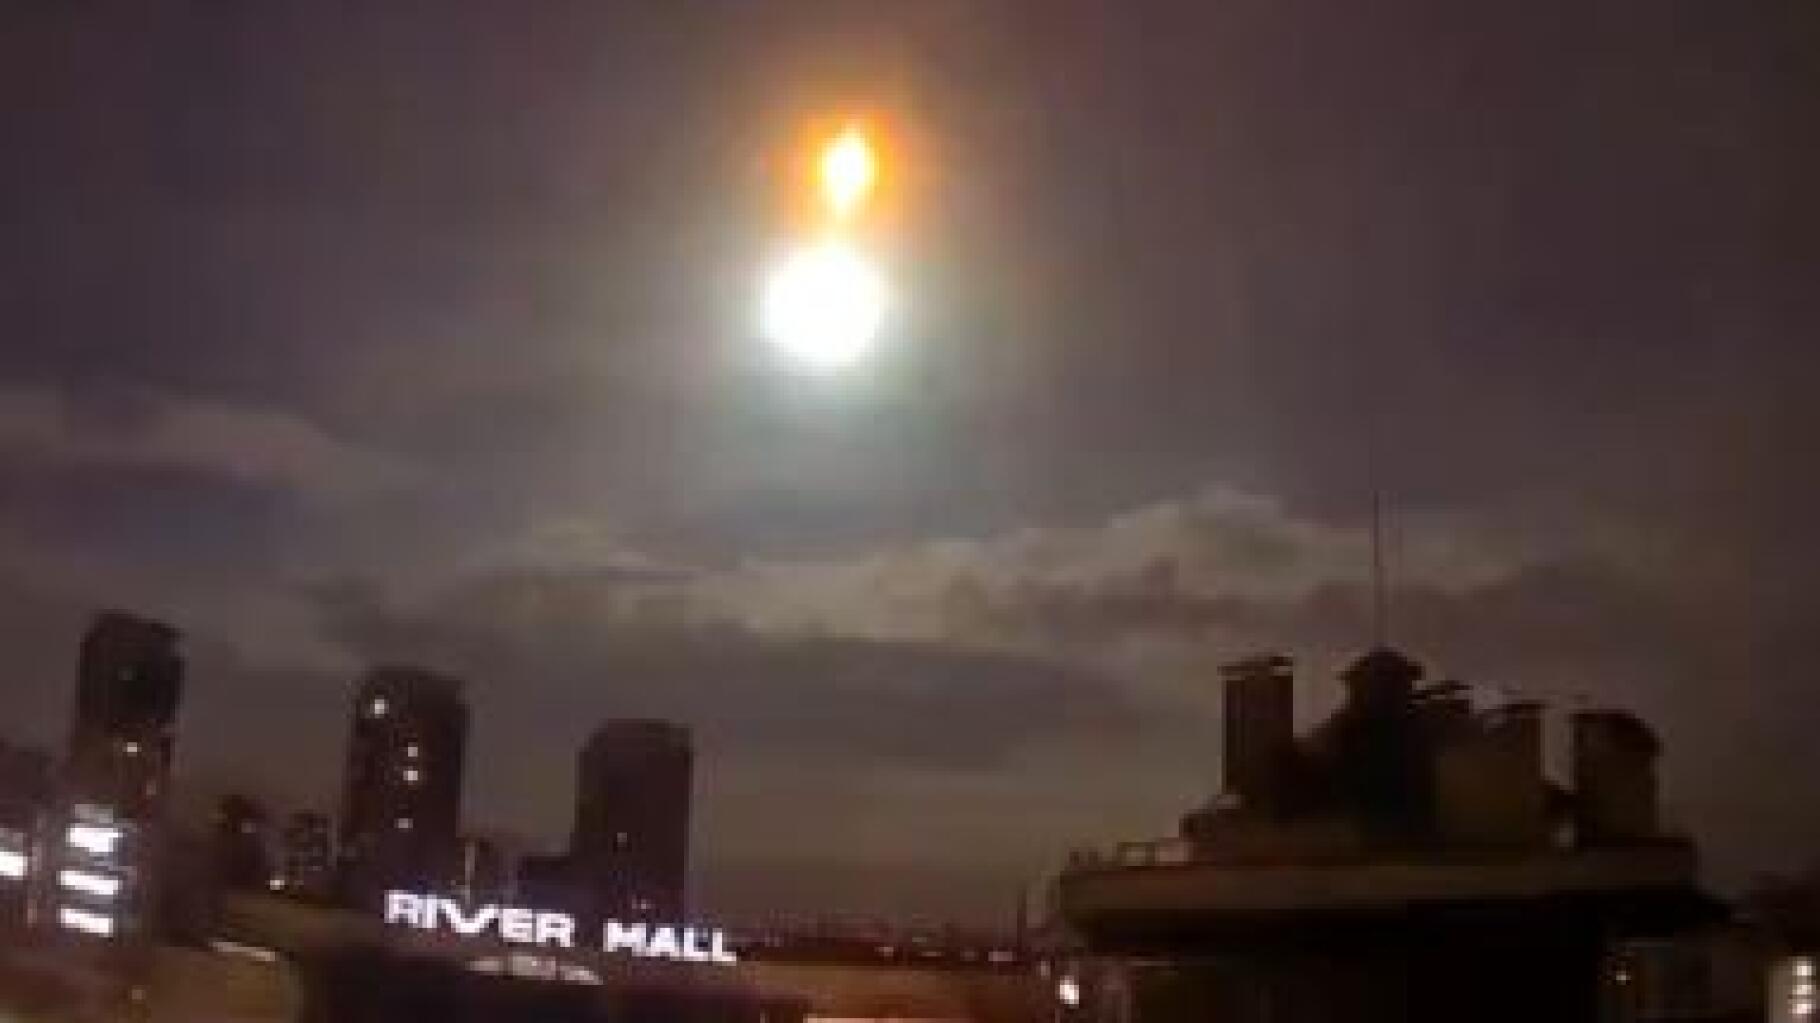 Meteor o satellite cadono a Kiev?  Il segreto di un impressionante lampo nel cielo dell’Ucraina